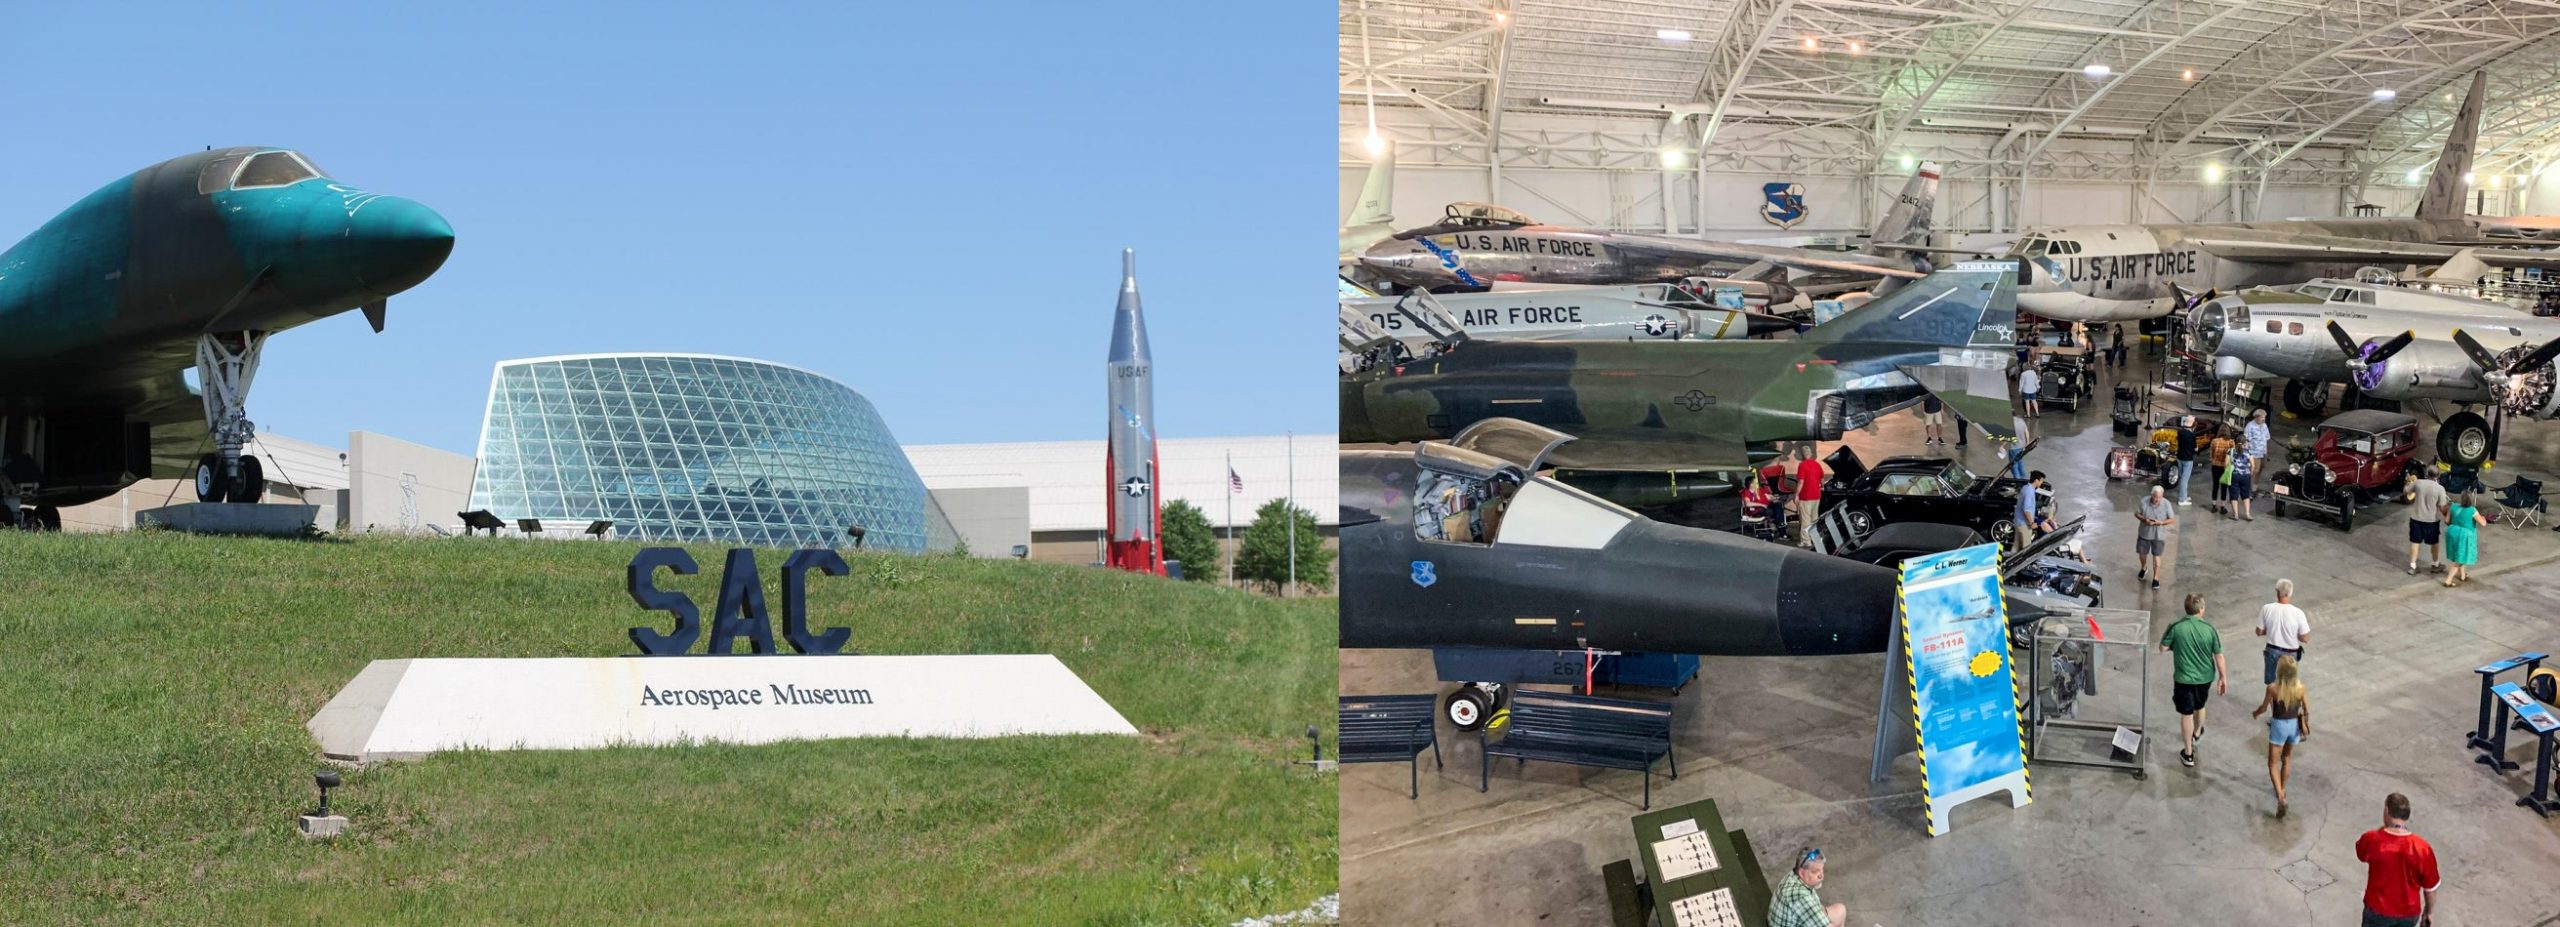 Strategic Air Command & Aerospace Museum f